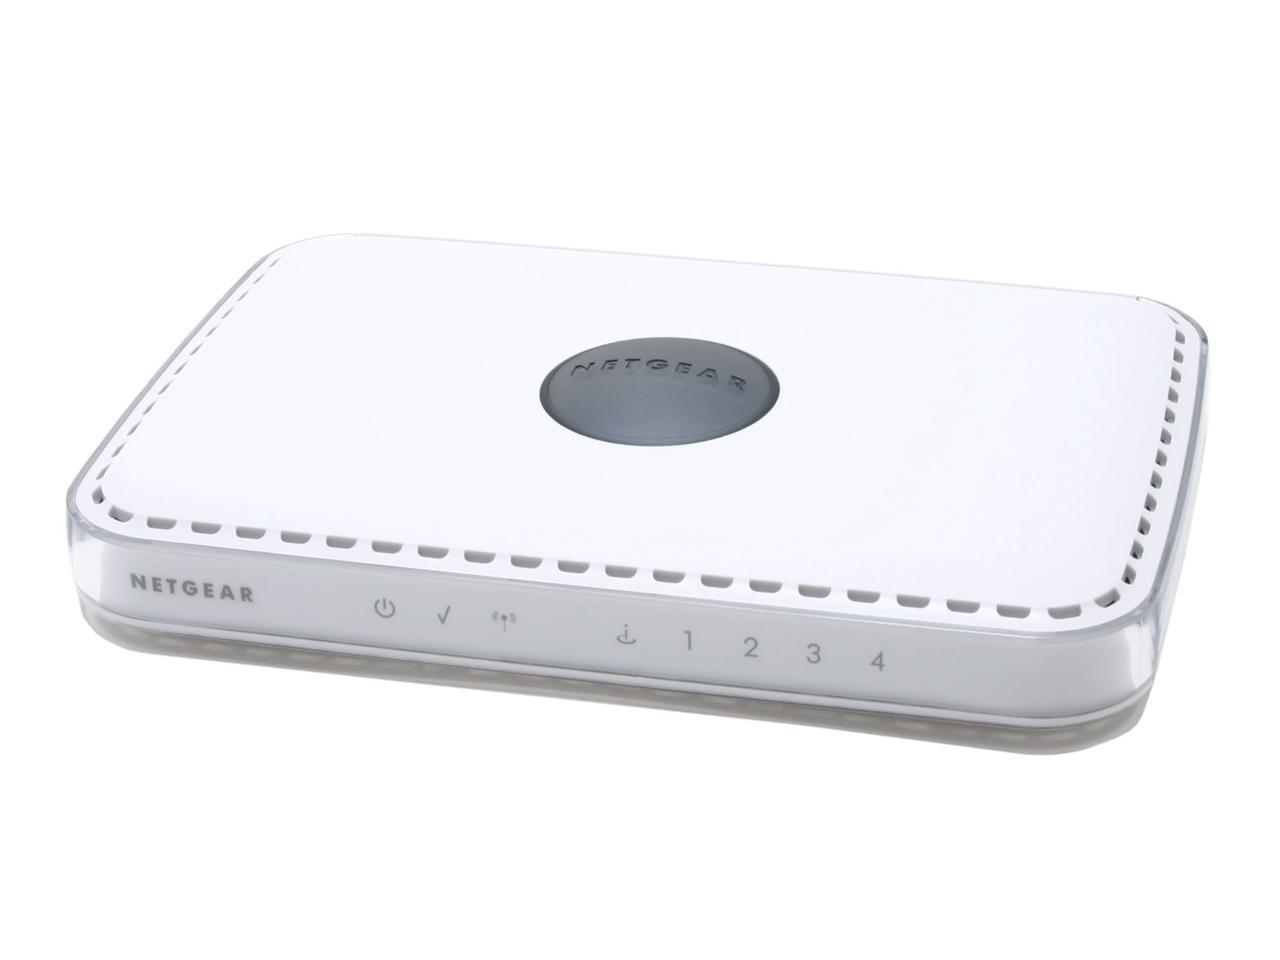 NETGEAR RangeMax Wireless Router - Newegg.com